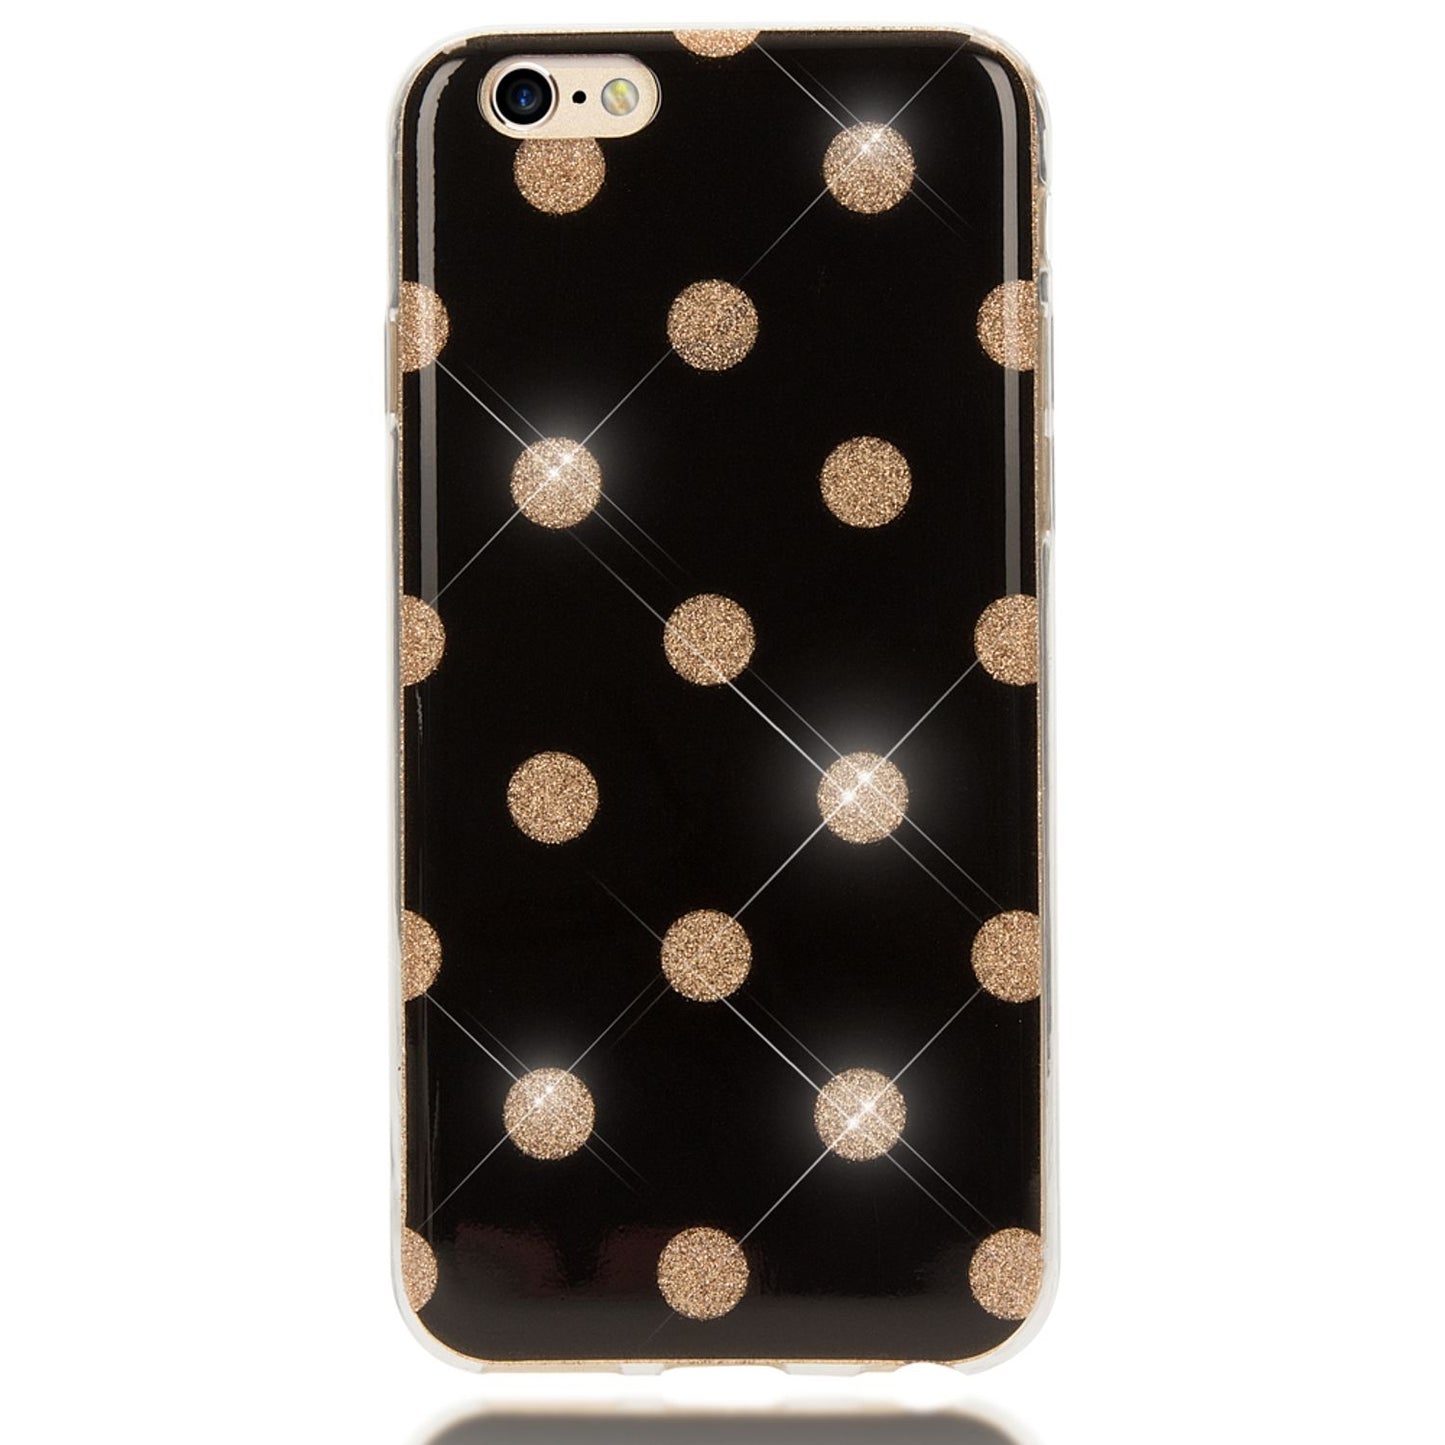 Apple iPhone 6 6S Punkte Handy Hülle von NALIA, Silikon Cover Case Schutz Glitter